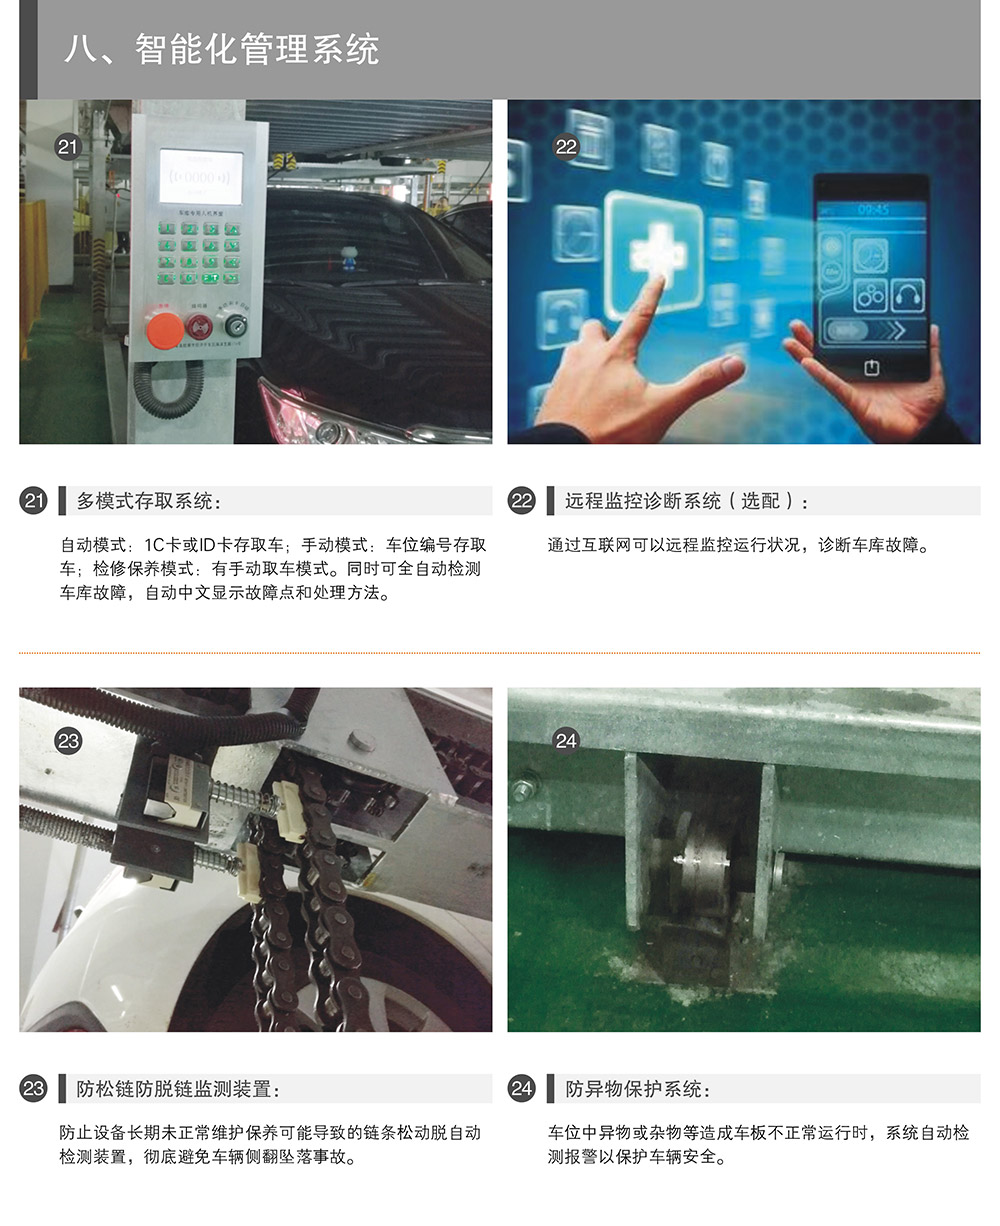 四川成都PSH升降横移立体停车设备智能化管理系统.jpg